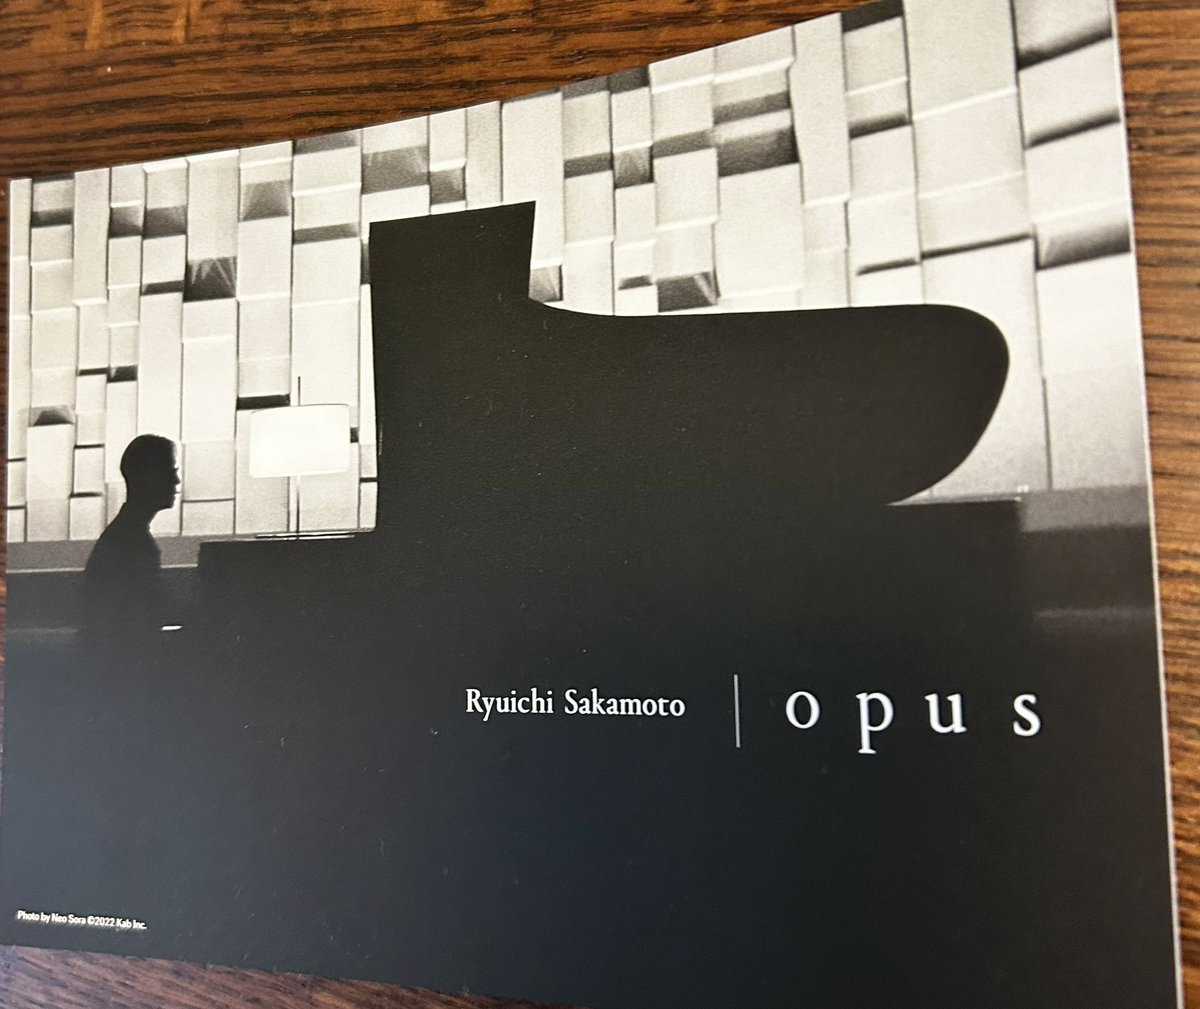 Ryuichi Sakamoto Opus
食べ物持込NG上映
109シネマズプレミアム新宿

クリアな音が美しく、最初からずっと涙が止まらないほど。
ここの音響はピアノの音が本当に美しく聴こえるからおすすめ
また観に行きたい♩

ポップコーンの音もしないし、皆さん静かで集中できました👏